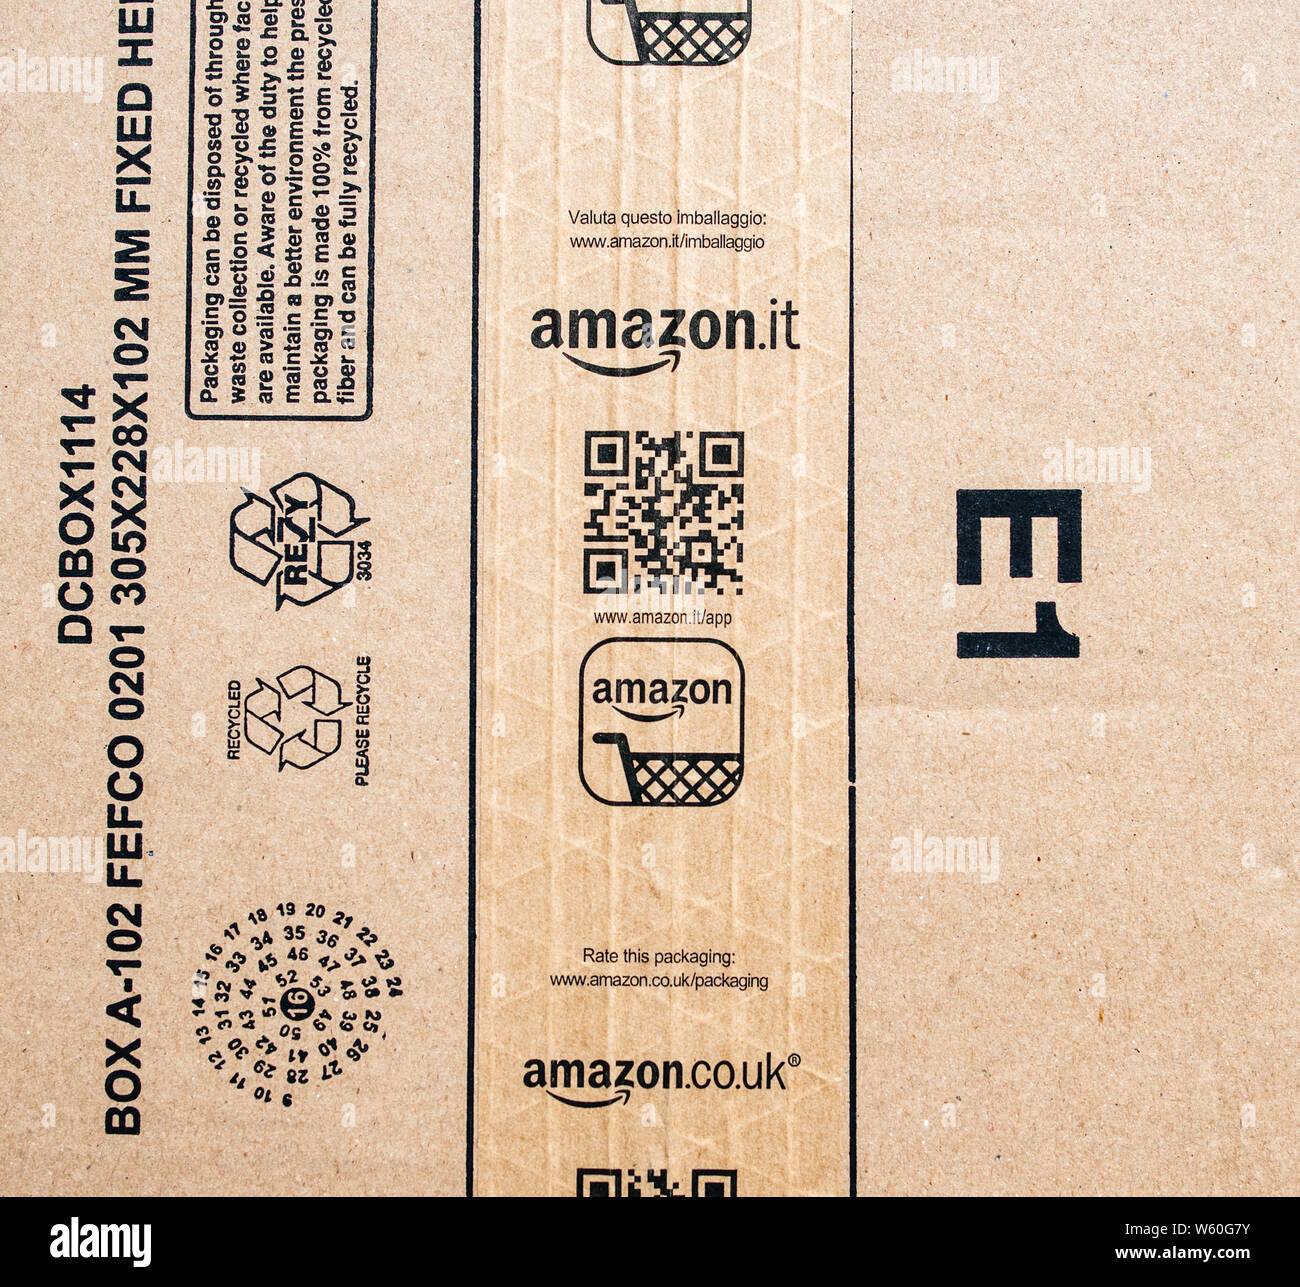 Paris, Frankreich - Jan 29, 2019: Blick von oben auf die Amazon Prime Karton  mit Amazon.it Italia co.uk Vereinigtes Königreich Aufkleber  Scotch-Anweisung der Verpackung Recycling Stockfotografie - Alamy